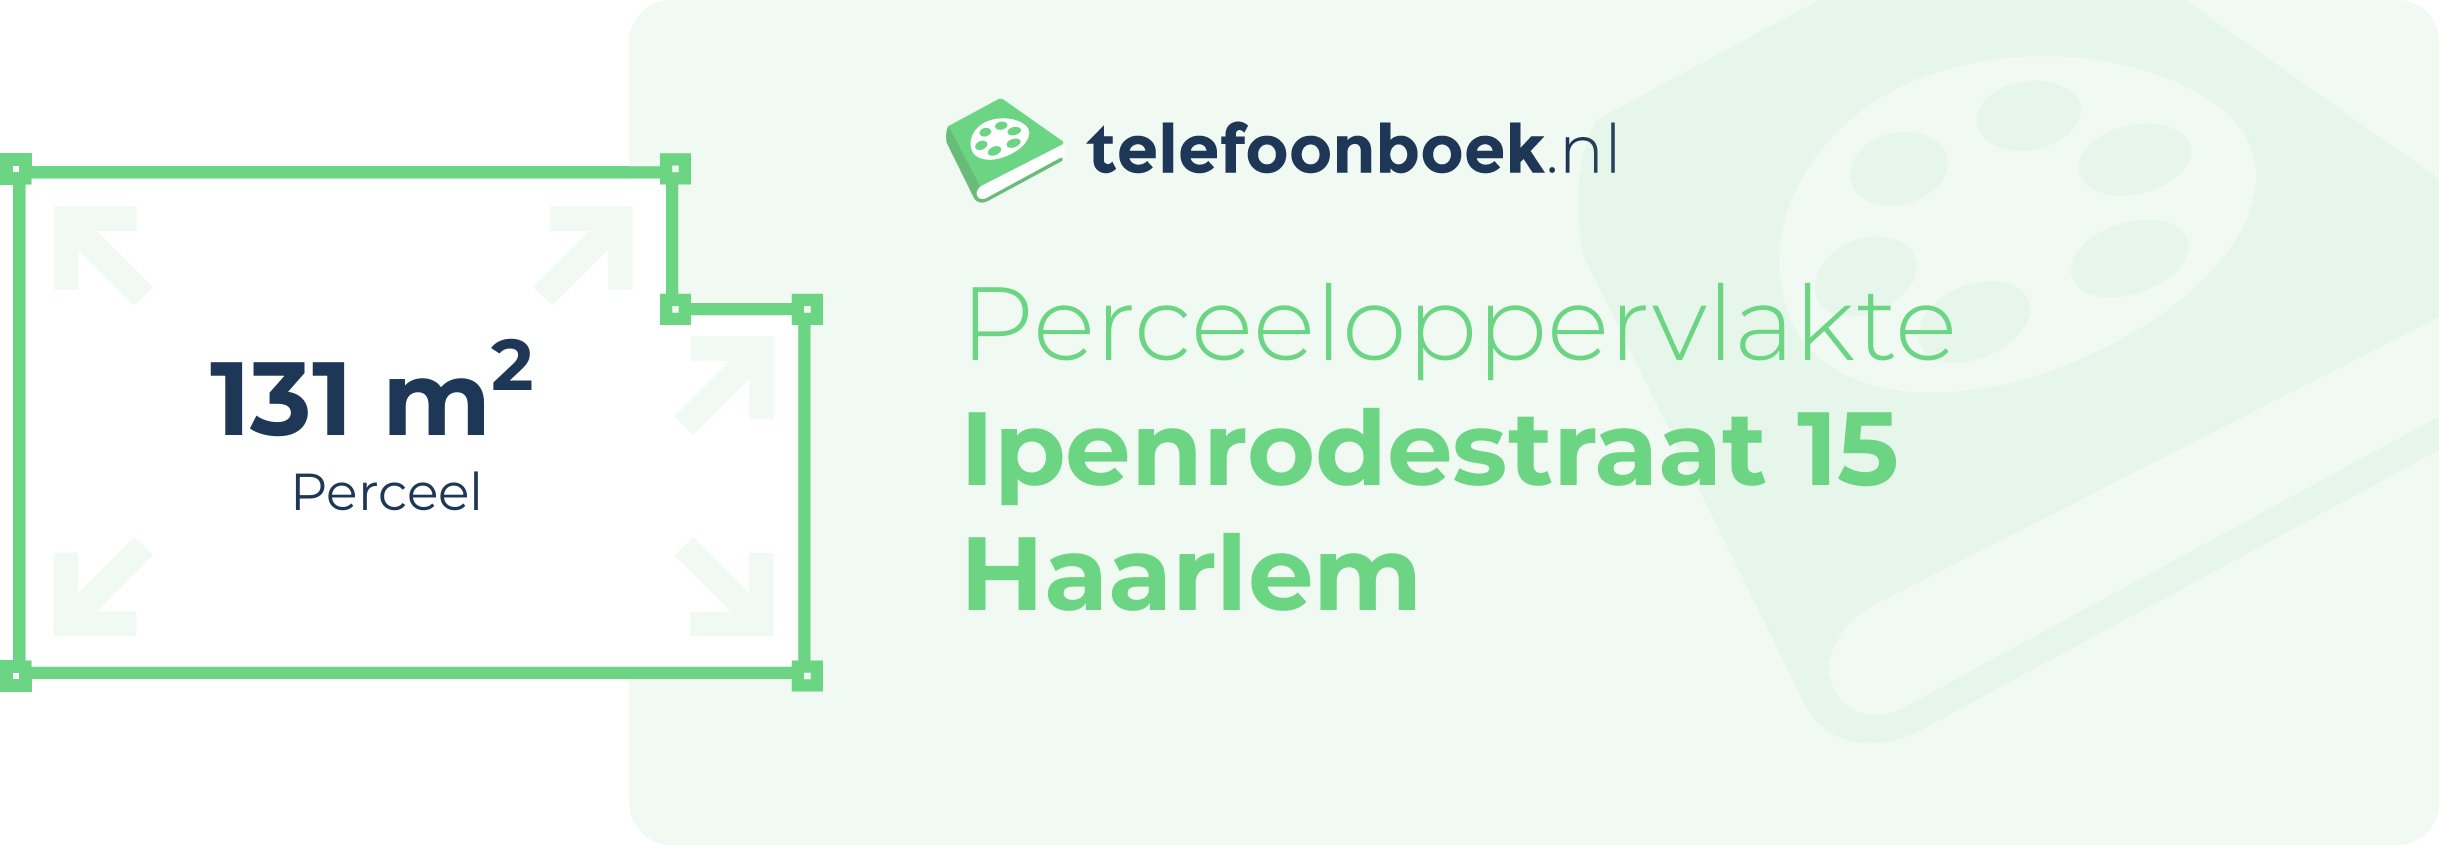 Perceeloppervlakte Ipenrodestraat 15 Haarlem